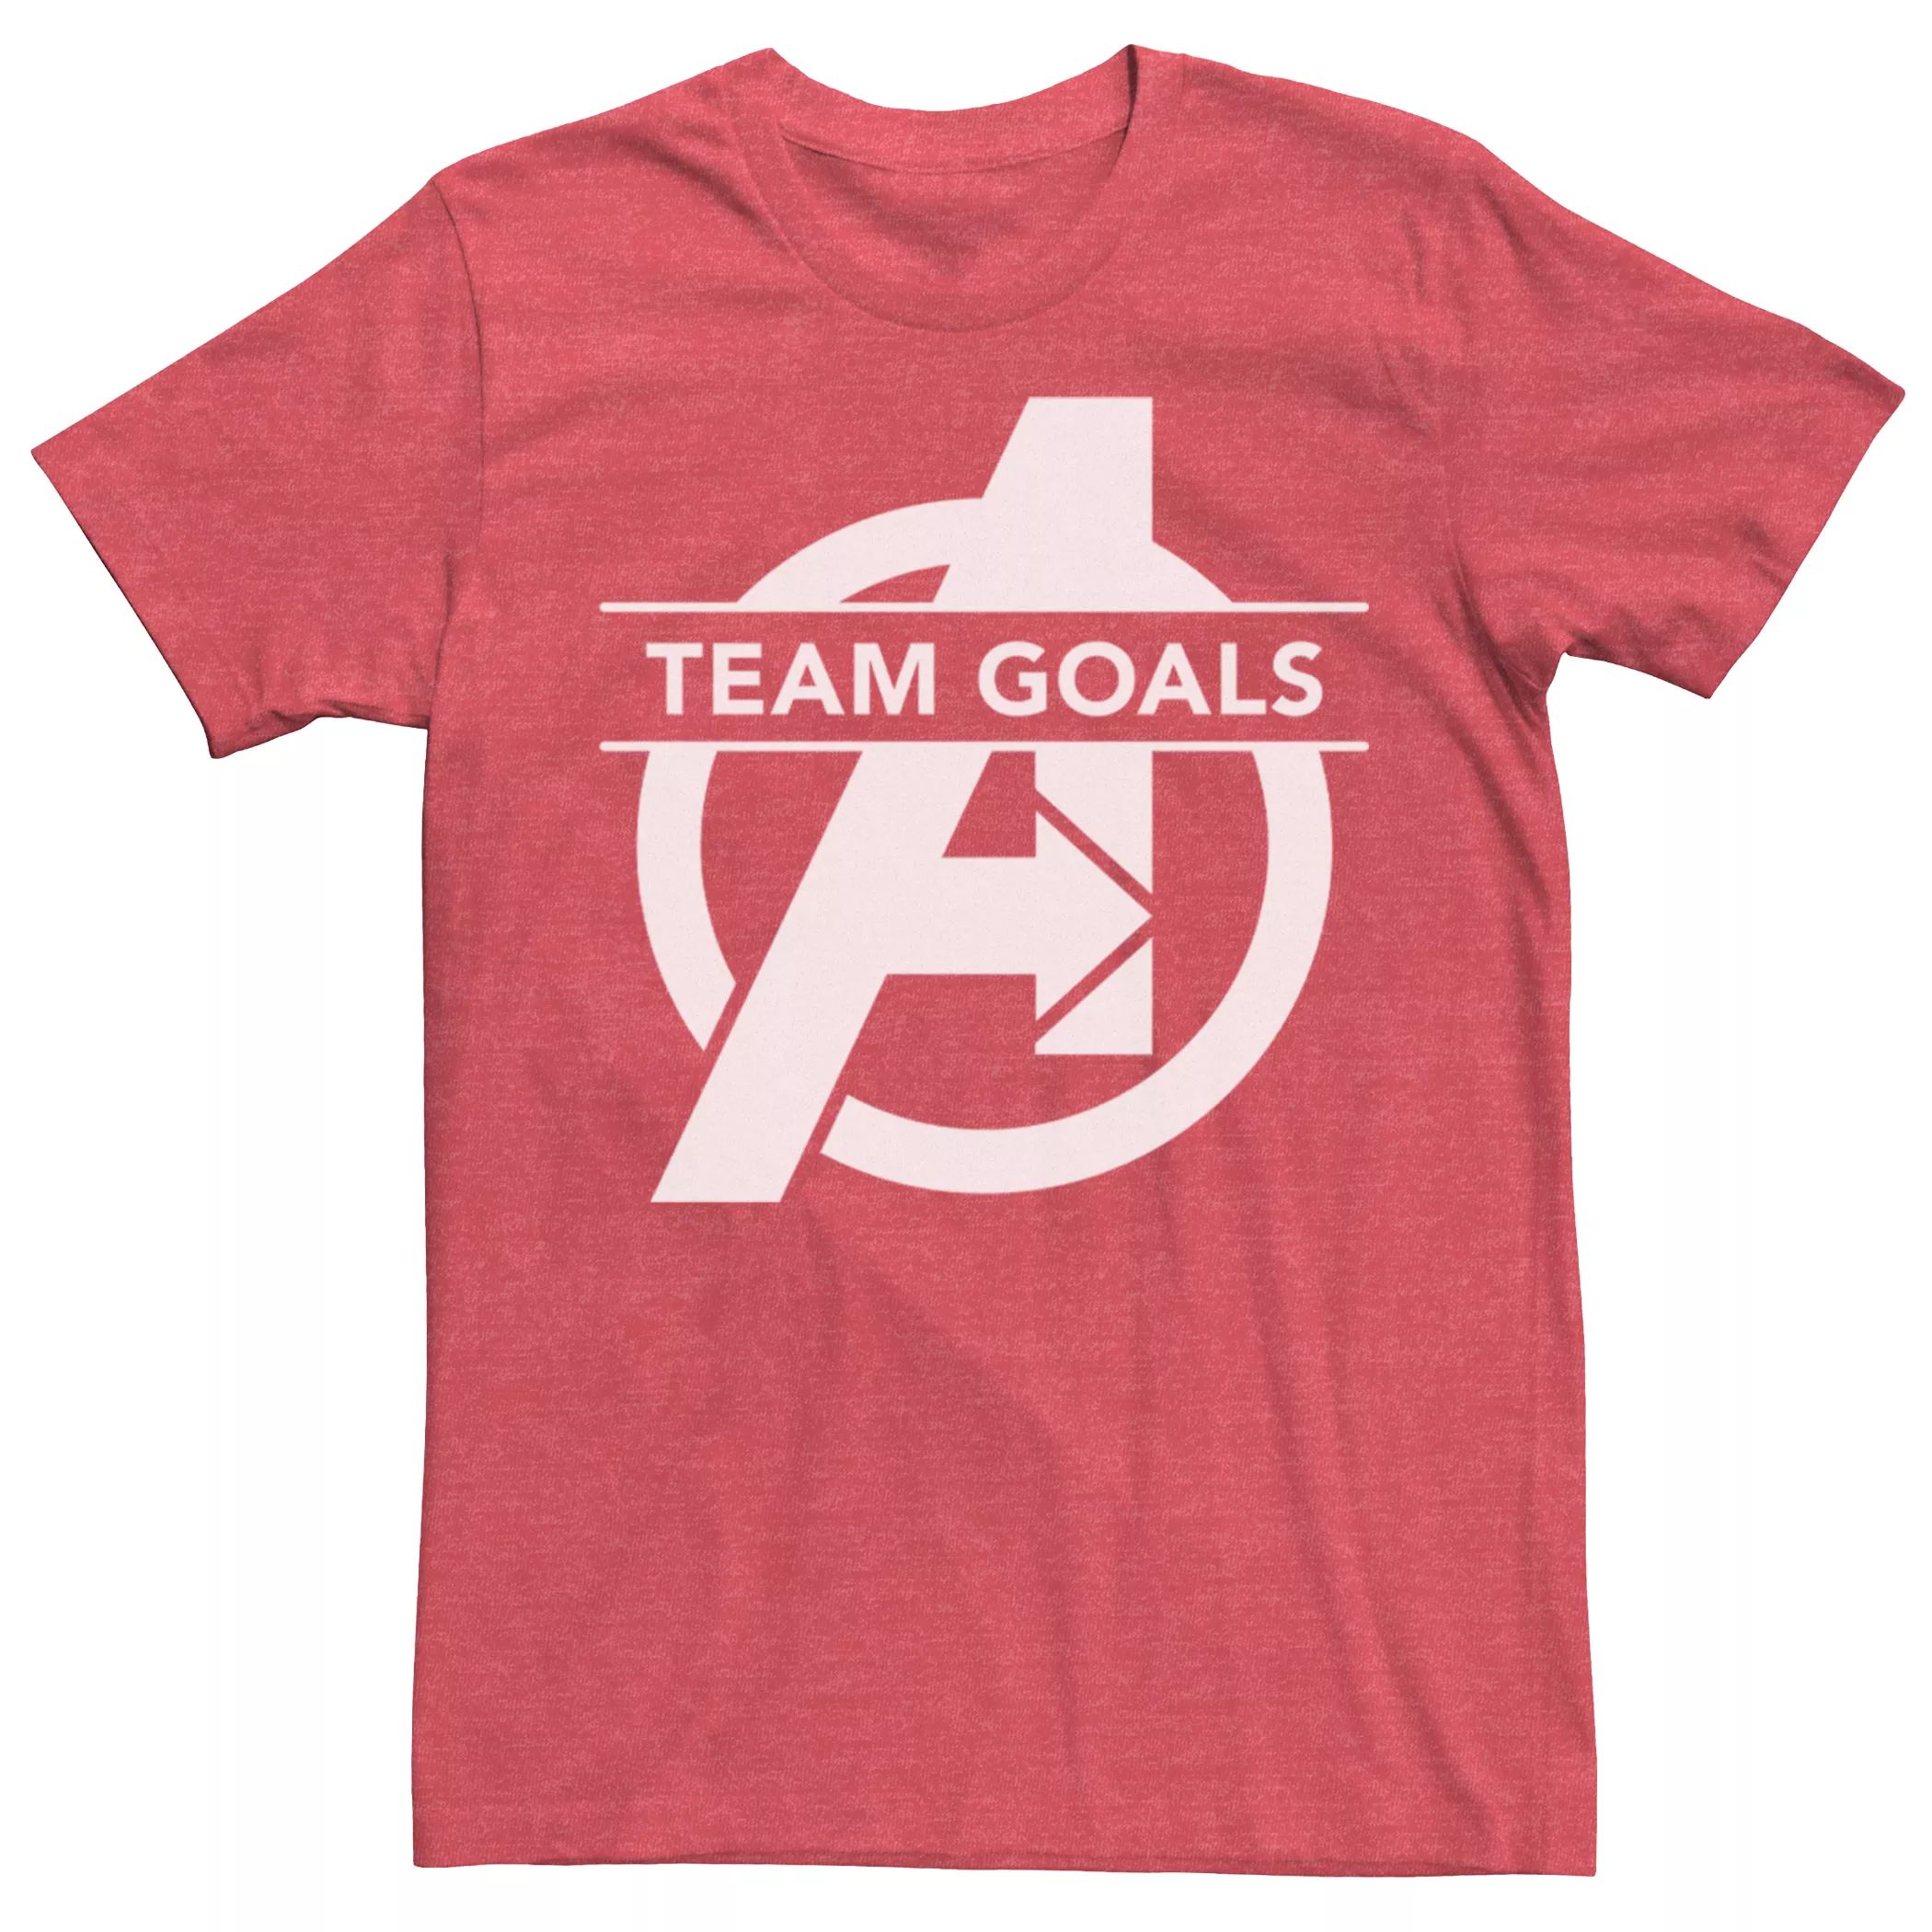 Мужская футболка Marvel Avengers Endgame Team Goals